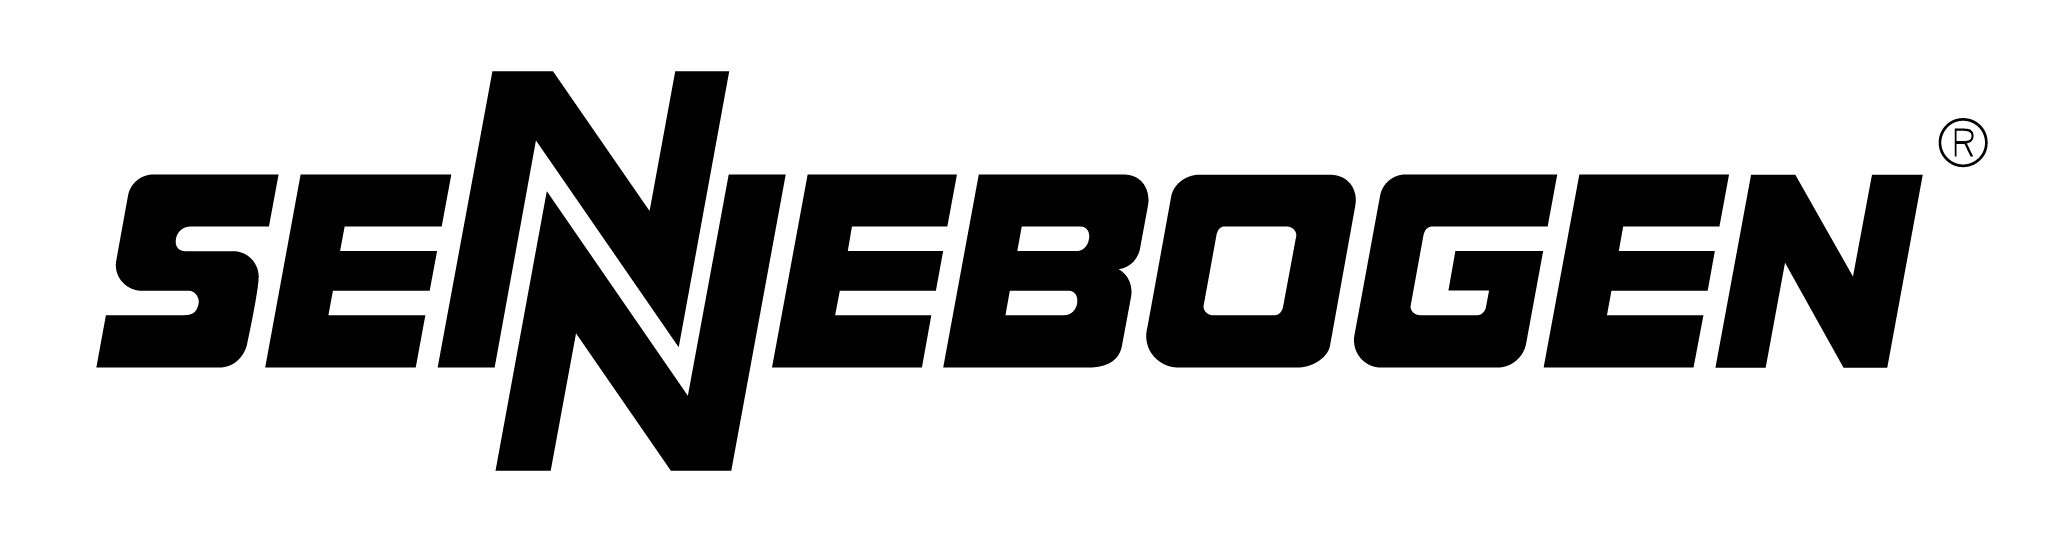 Sennebogen LogoBlack.jpg